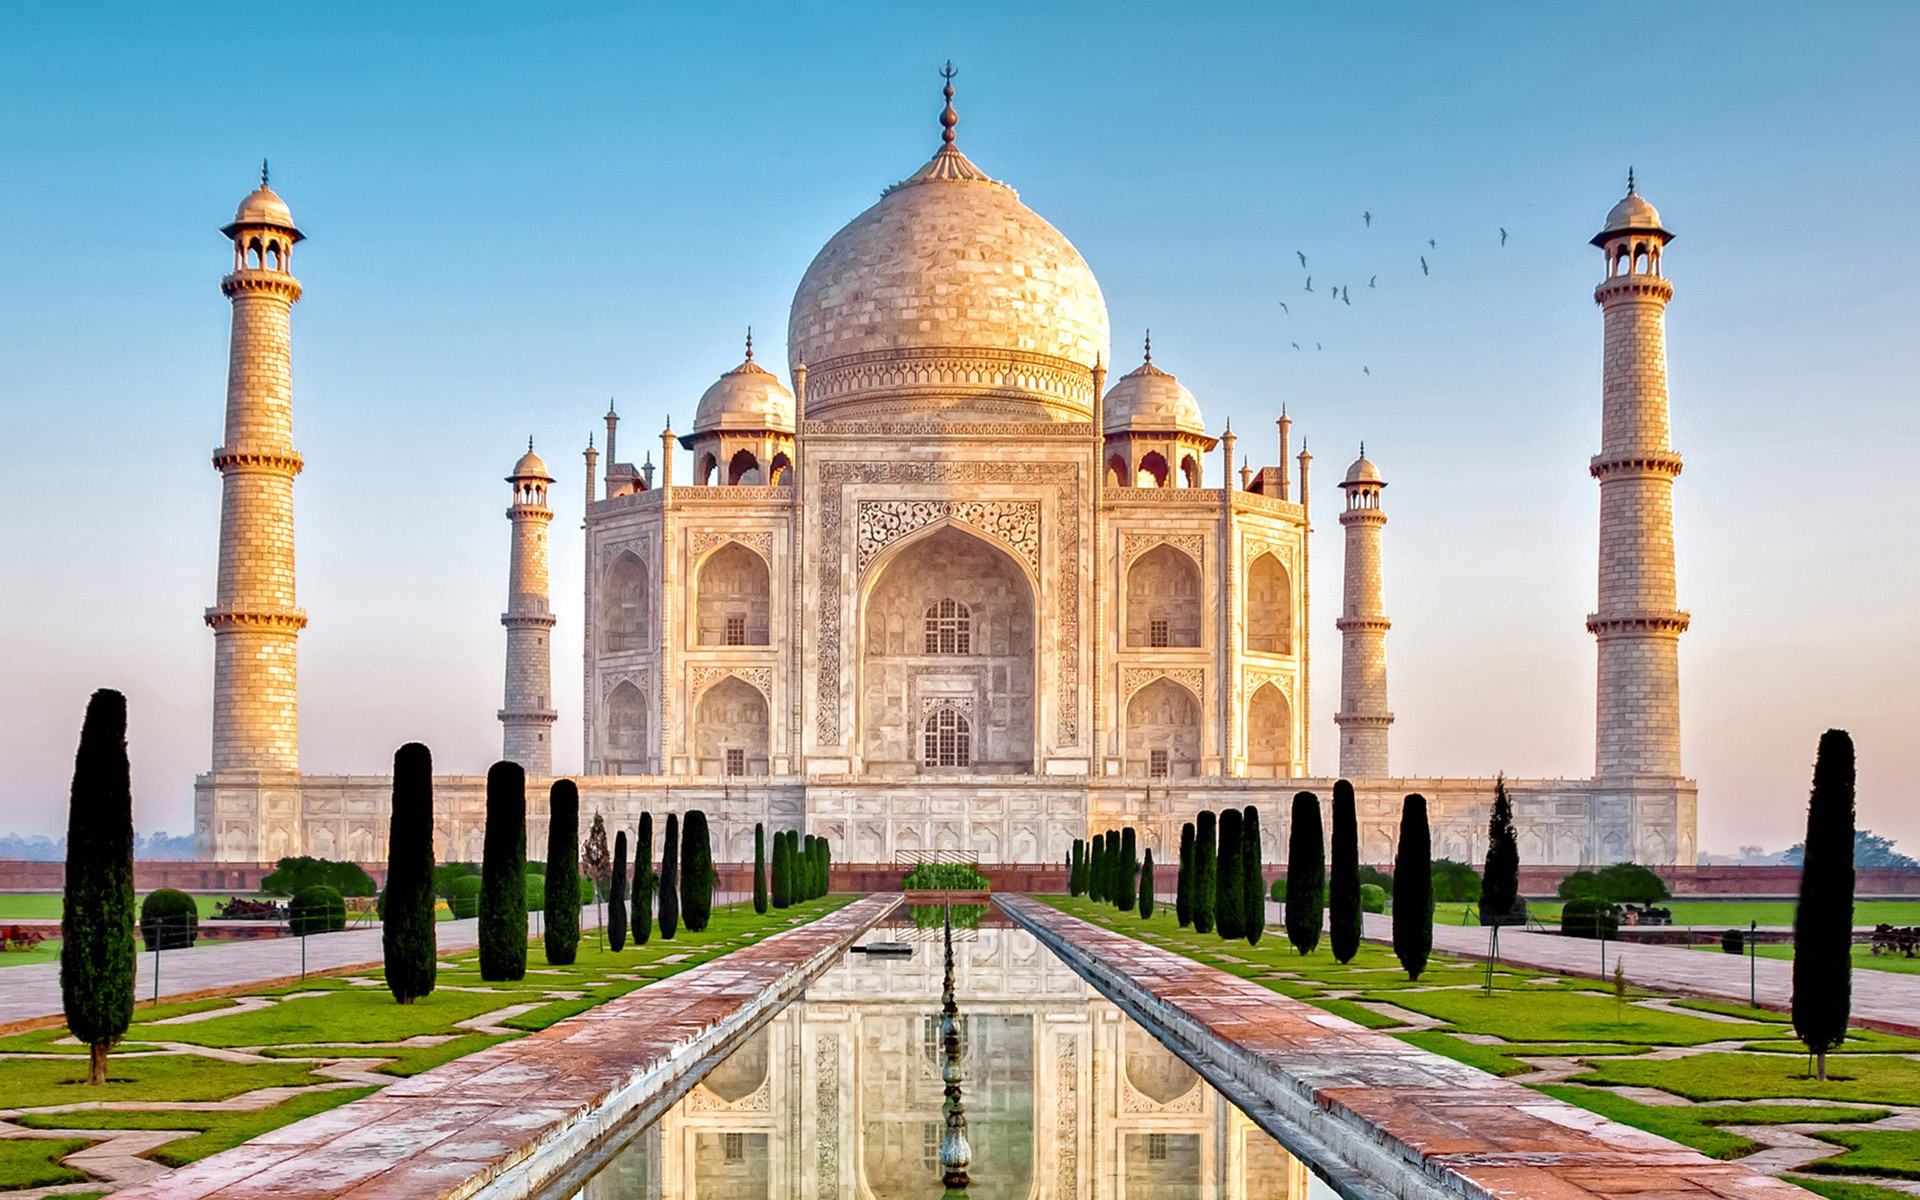 Taj Mahal - AmazingPlaces.com